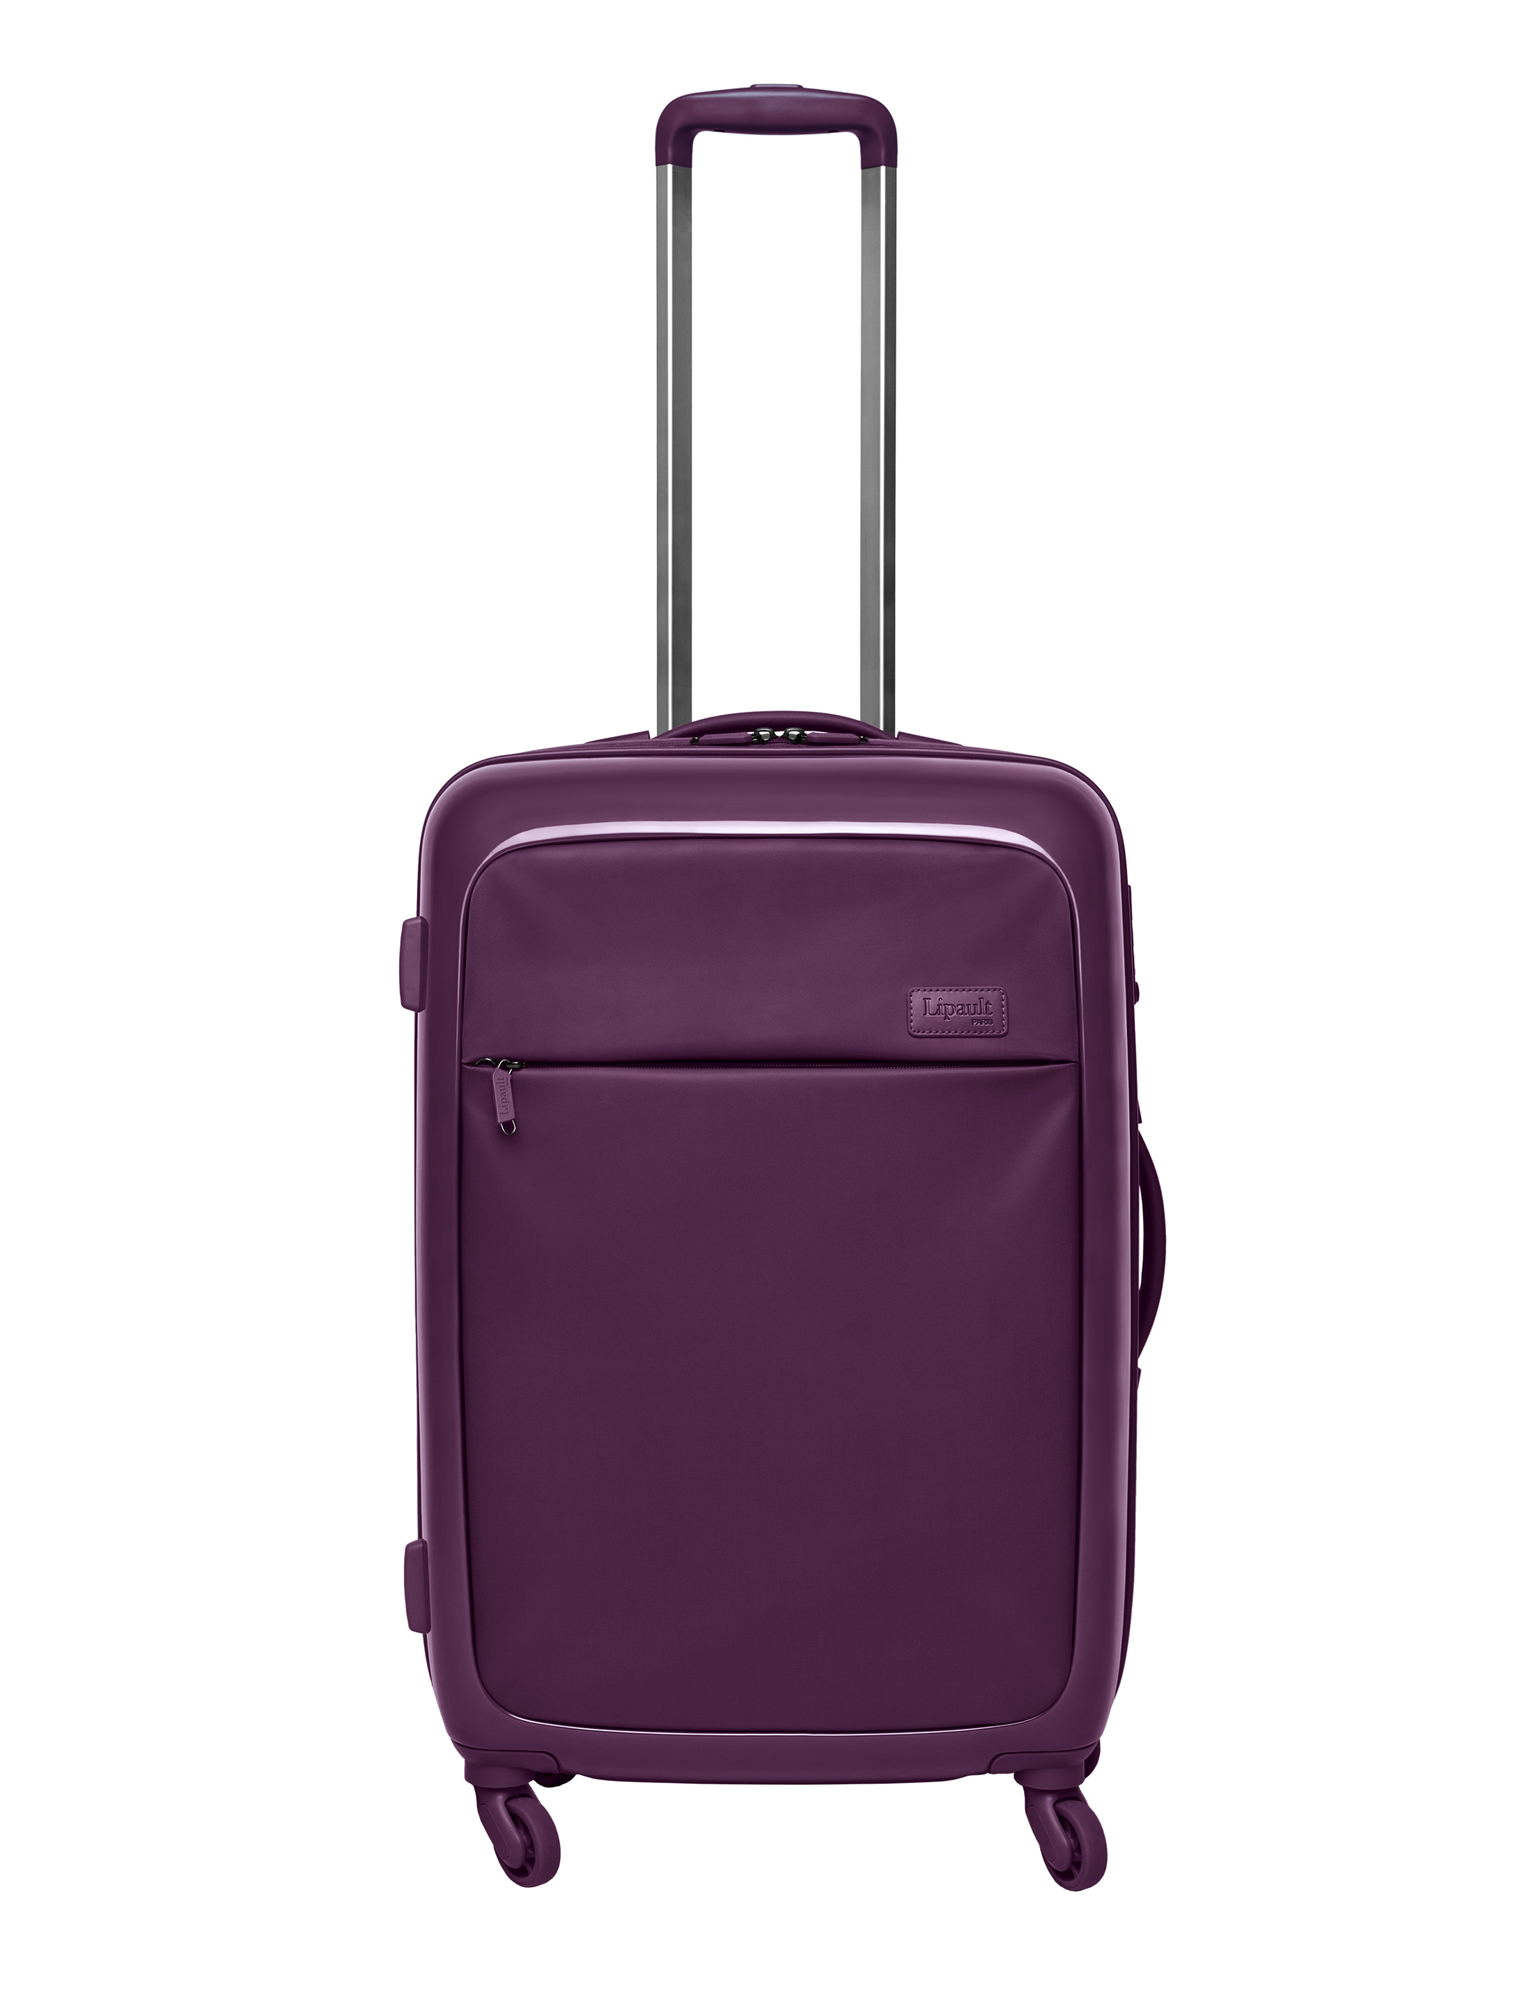 Valises & Co : 20 bagages tendance pour tous vos voyages ! - Femme Actuelle